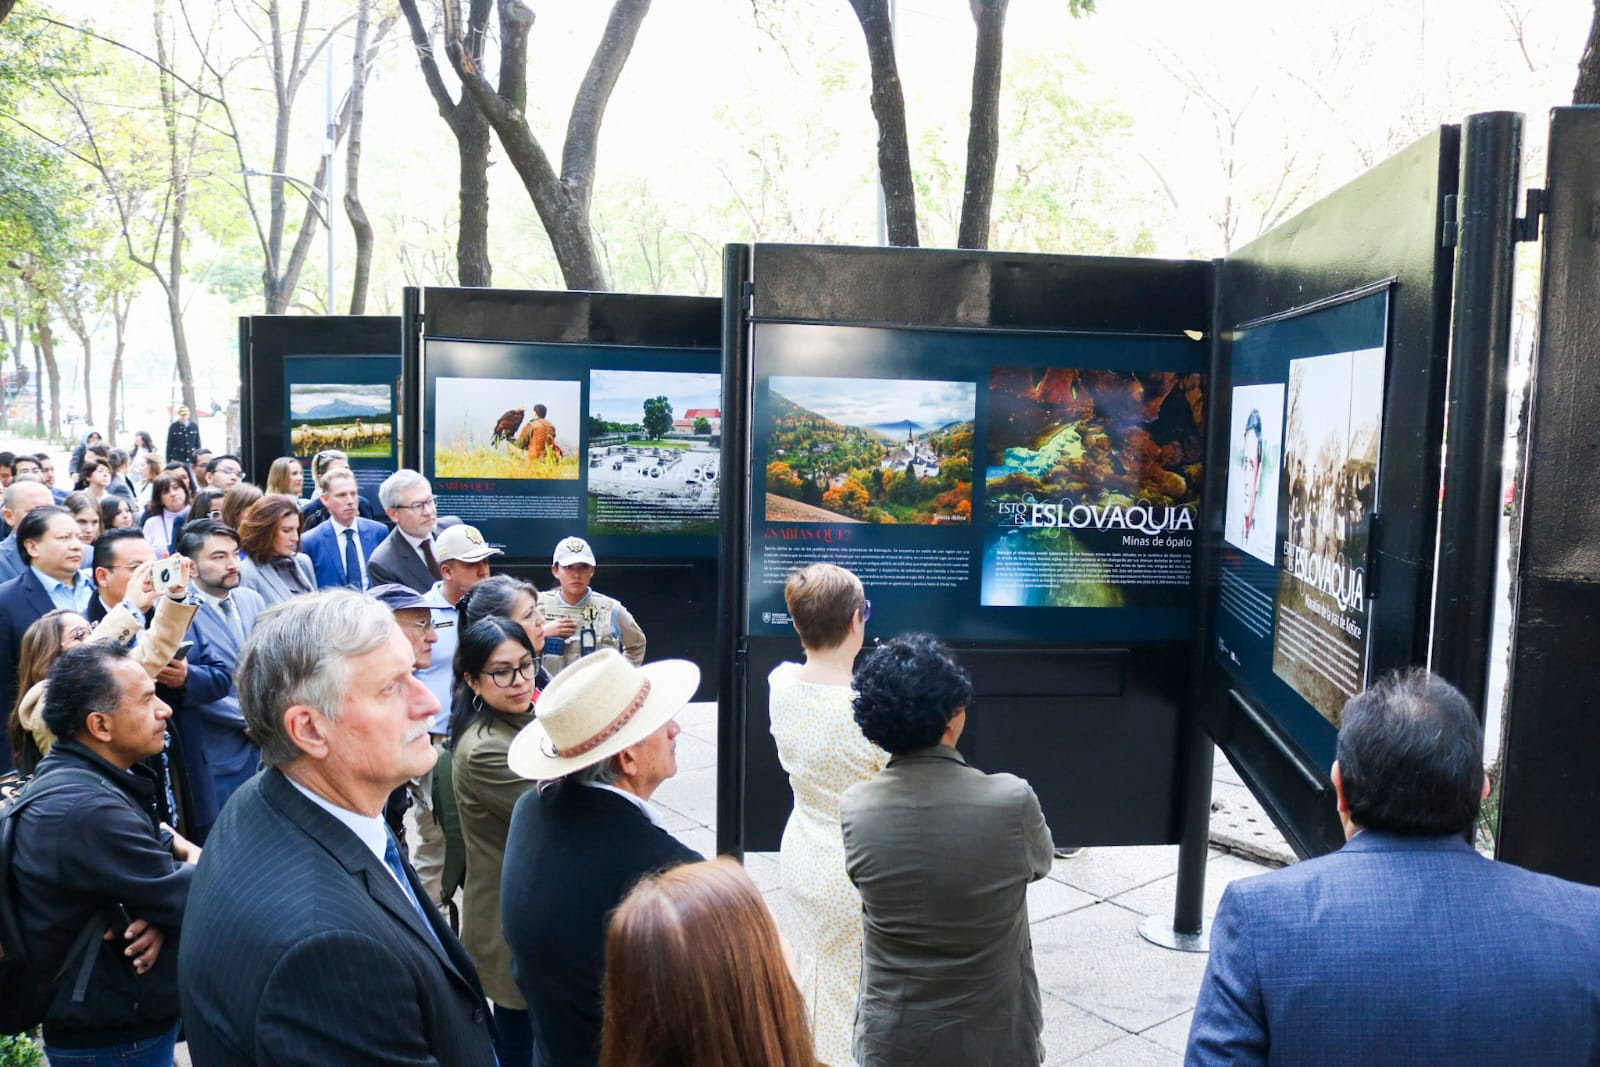 Celebrando 30 años de relaciones diplomáticas, la Embajada de Eslovaquia presenta exposición en la Ciudad de México